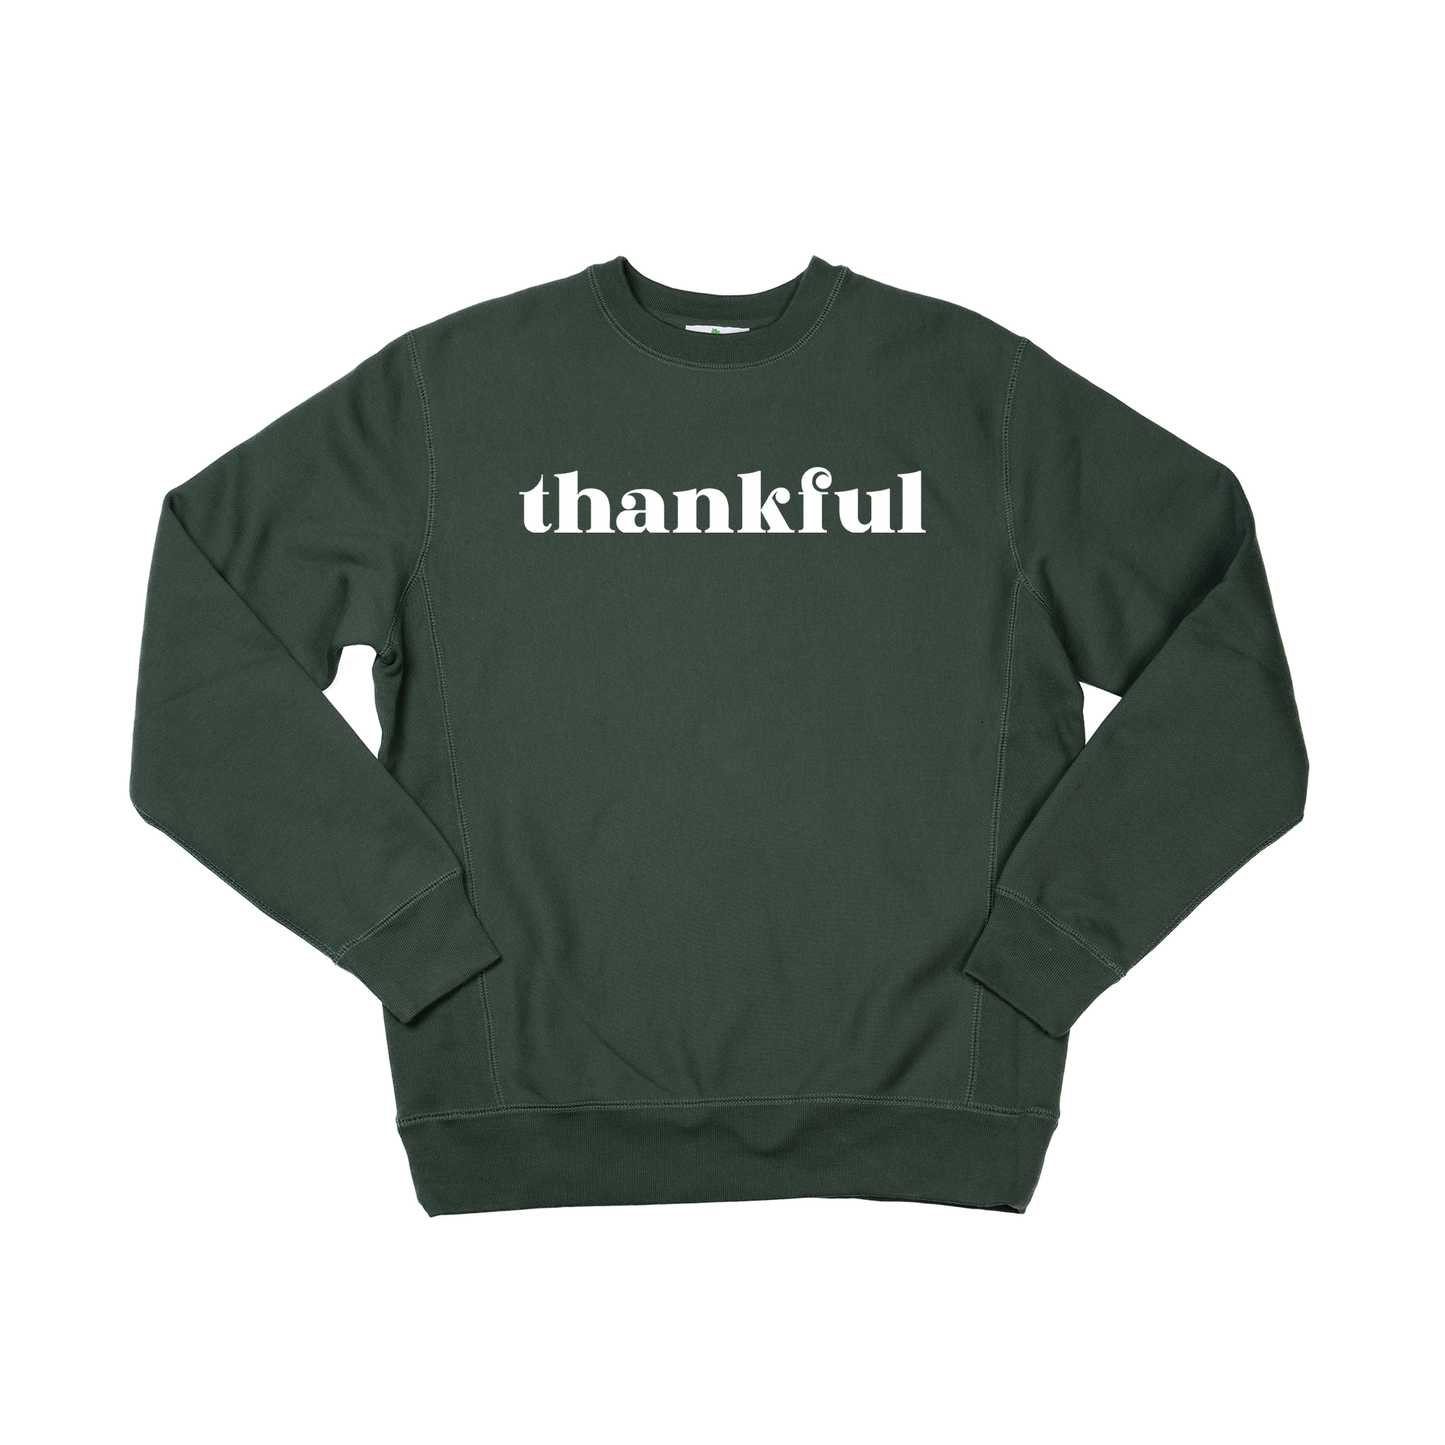 Thankful (White) - Heavyweight Sweatshirt (Pine)